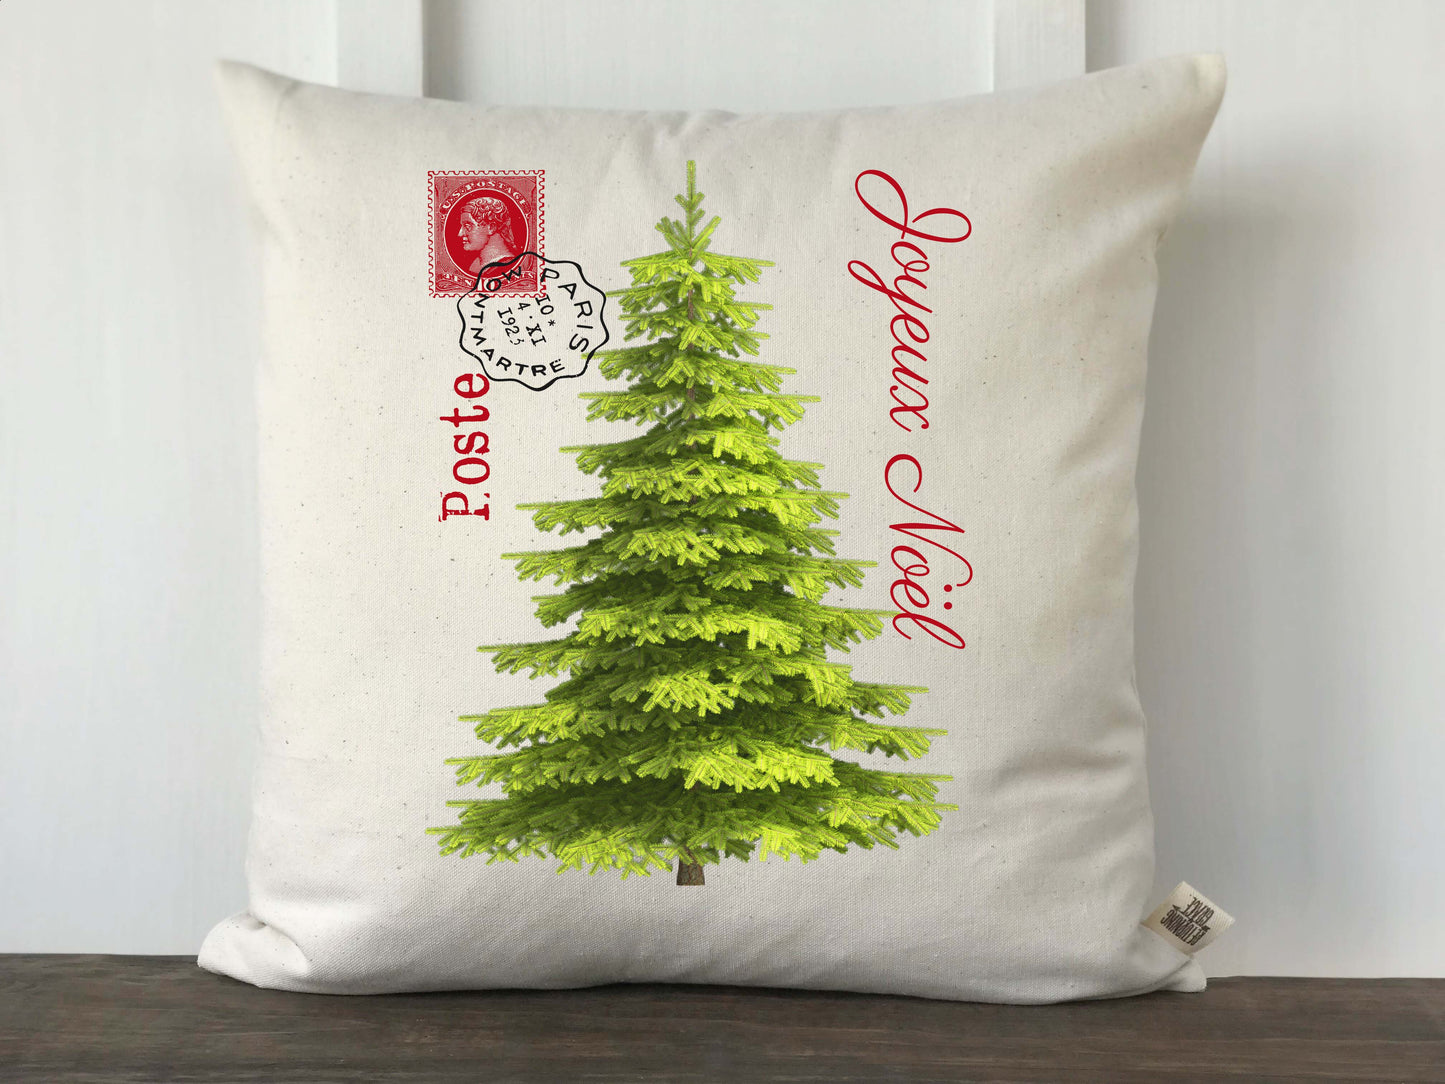 Joyeux Noel French Christmas Tree Pillow - Returning Grace Designs